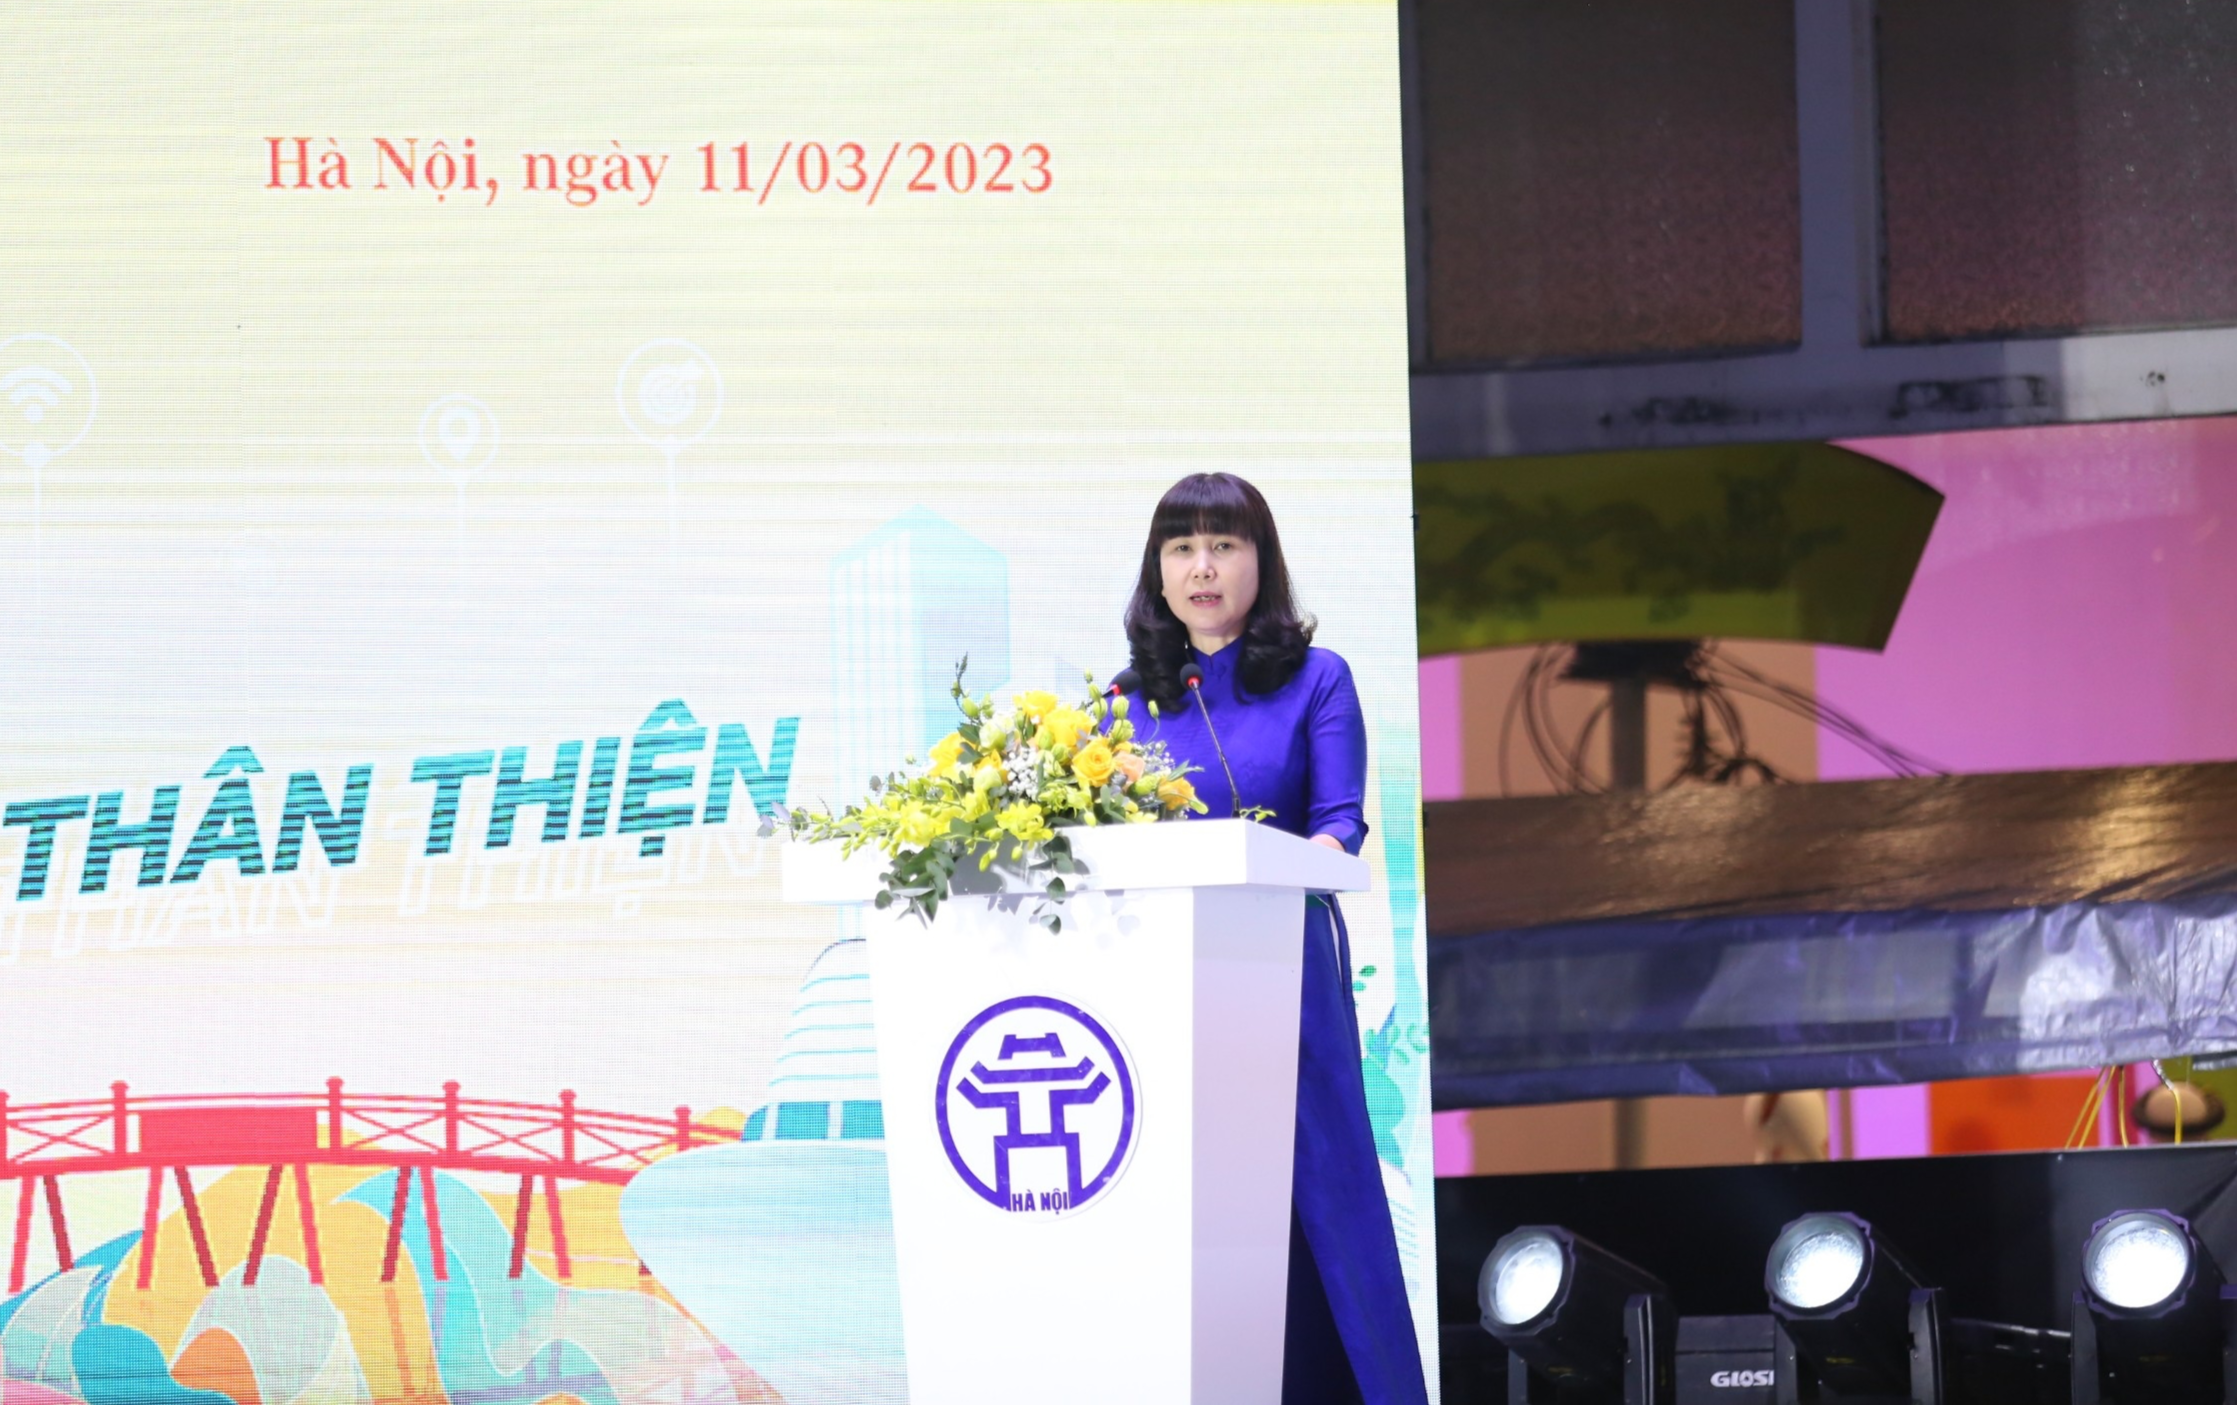 “Du lịch Hà Nội chào 2023” mở đầu chuỗi sự kiện, lễ hội sôi động, hấp dẫn